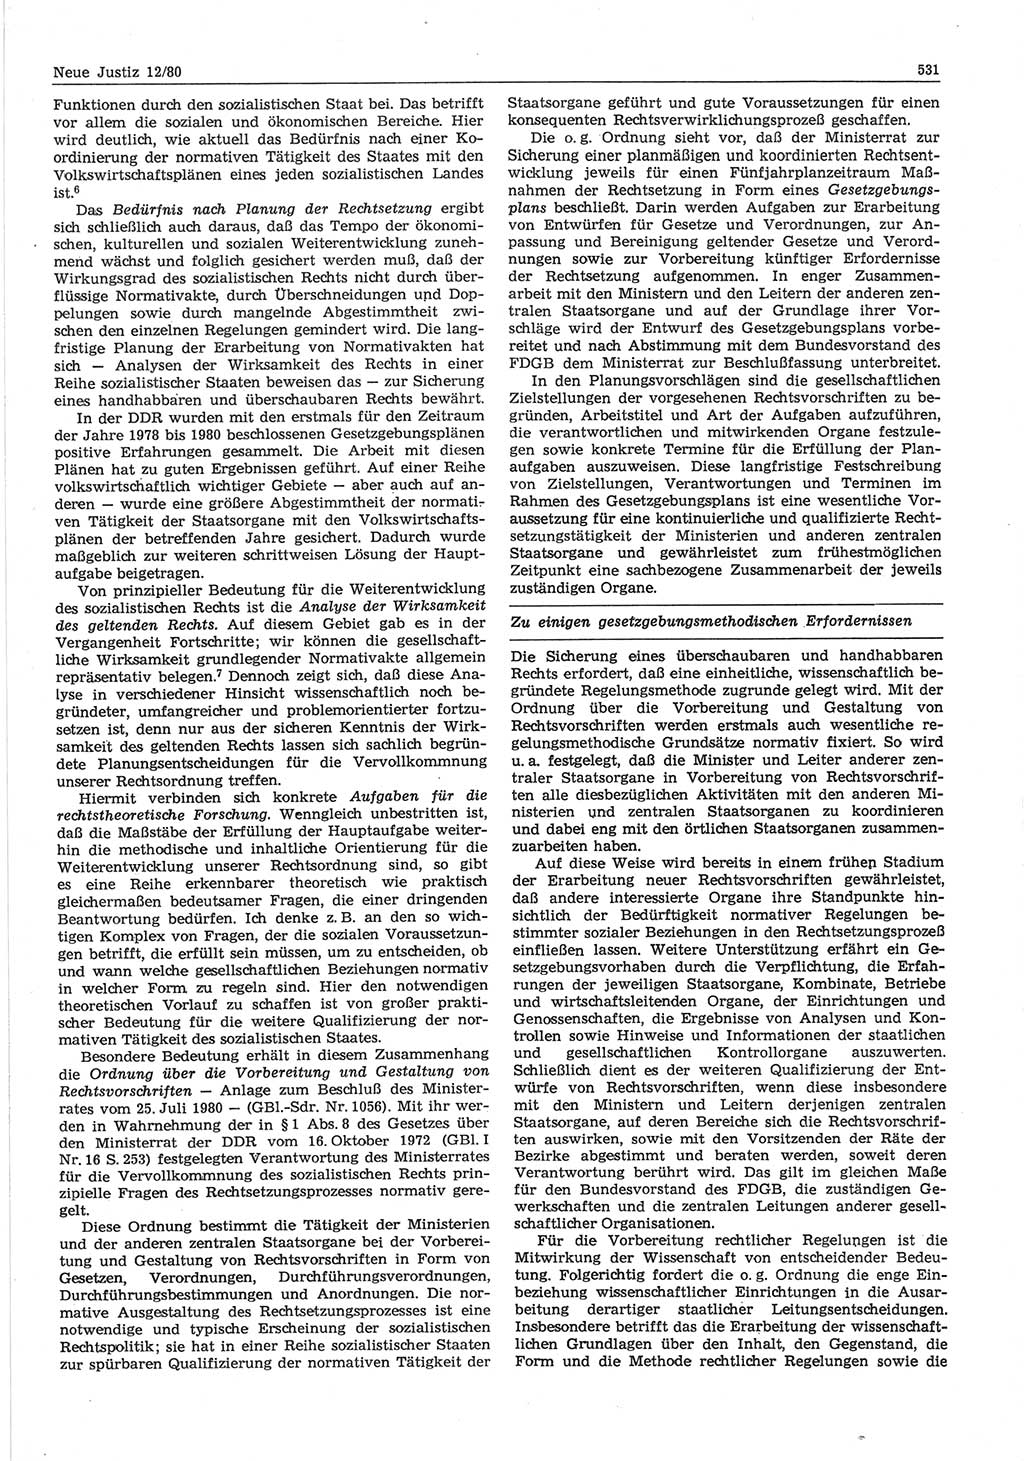 Neue Justiz (NJ), Zeitschrift für sozialistisches Recht und Gesetzlichkeit [Deutsche Demokratische Republik (DDR)], 34. Jahrgang 1980, Seite 531 (NJ DDR 1980, S. 531)